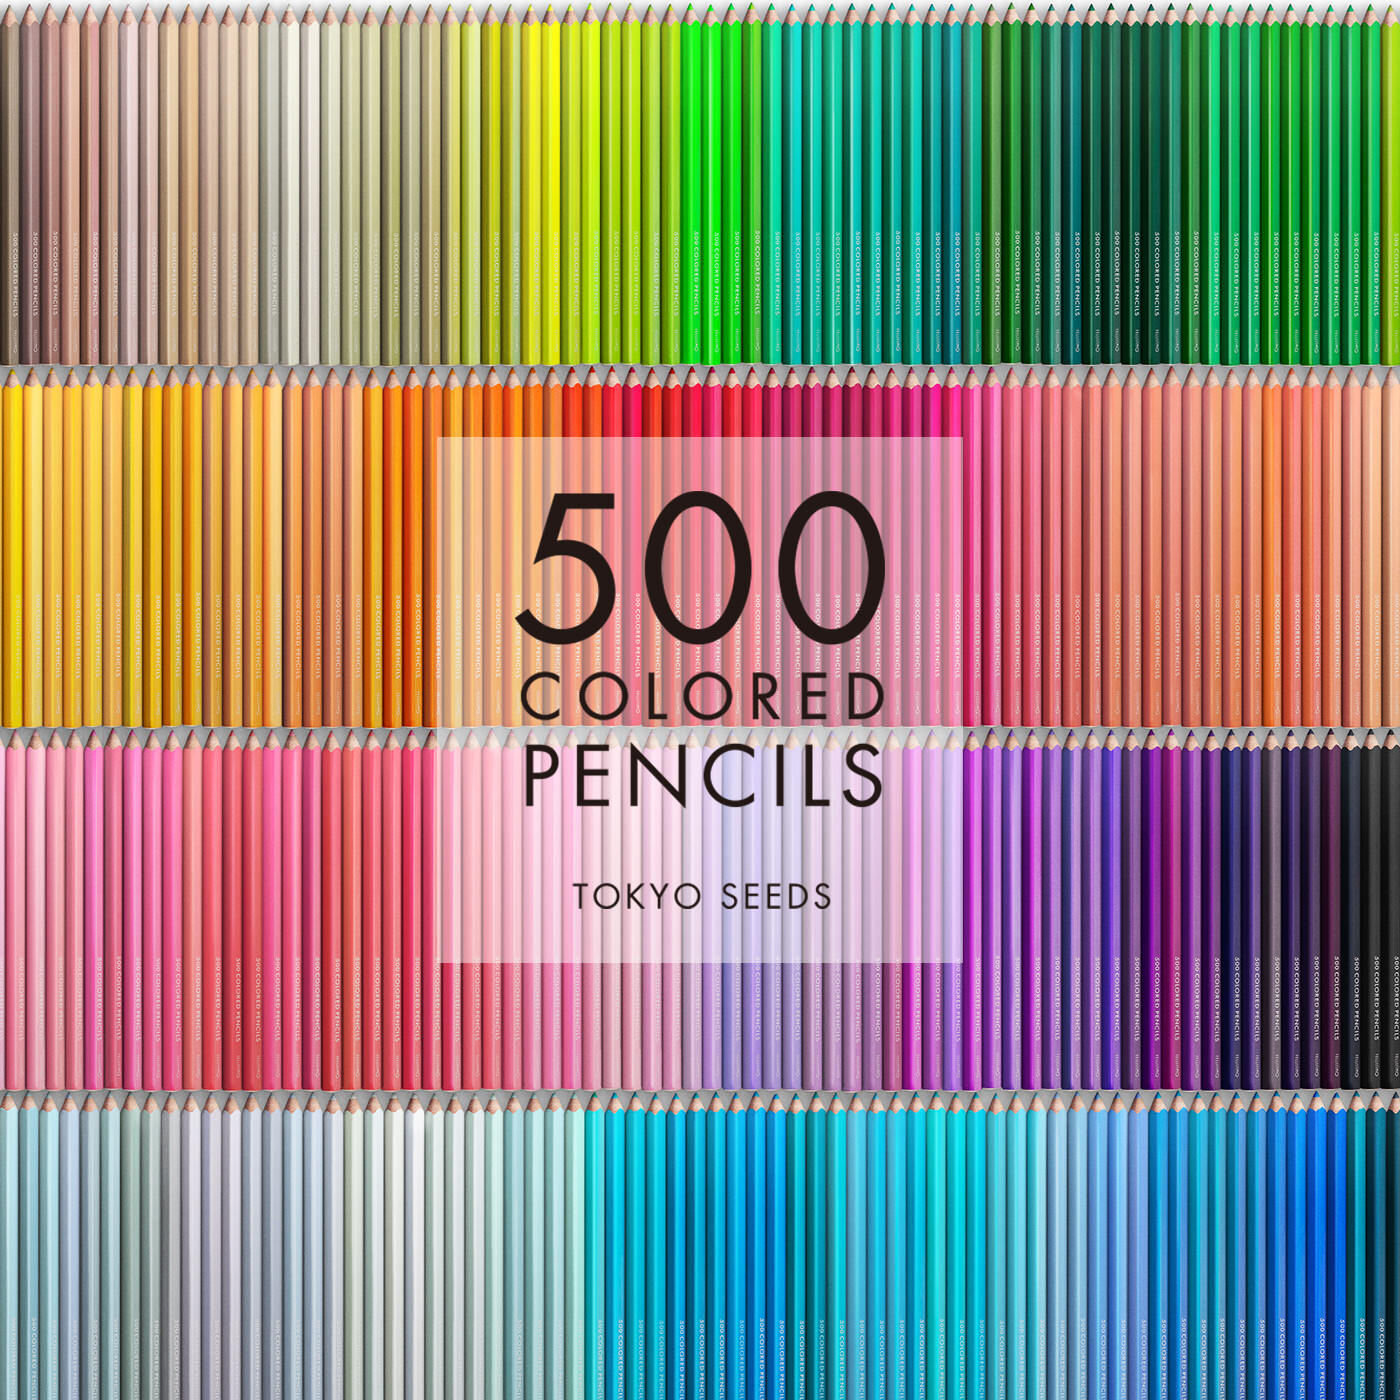 Real Stock|【211/500 CANDY SURPRISE】500色の色えんぴつ TOKYO SEEDS|1992年、世界初の「500色」という膨大な色数の色えんぴつが誕生して以来、その販売数は発売当初から合わせると、世界55ヵ国10万セット以上。今回、メイド・イン・ジャパンにこだわり、すべてが新しく生まれ変わって登場しました。